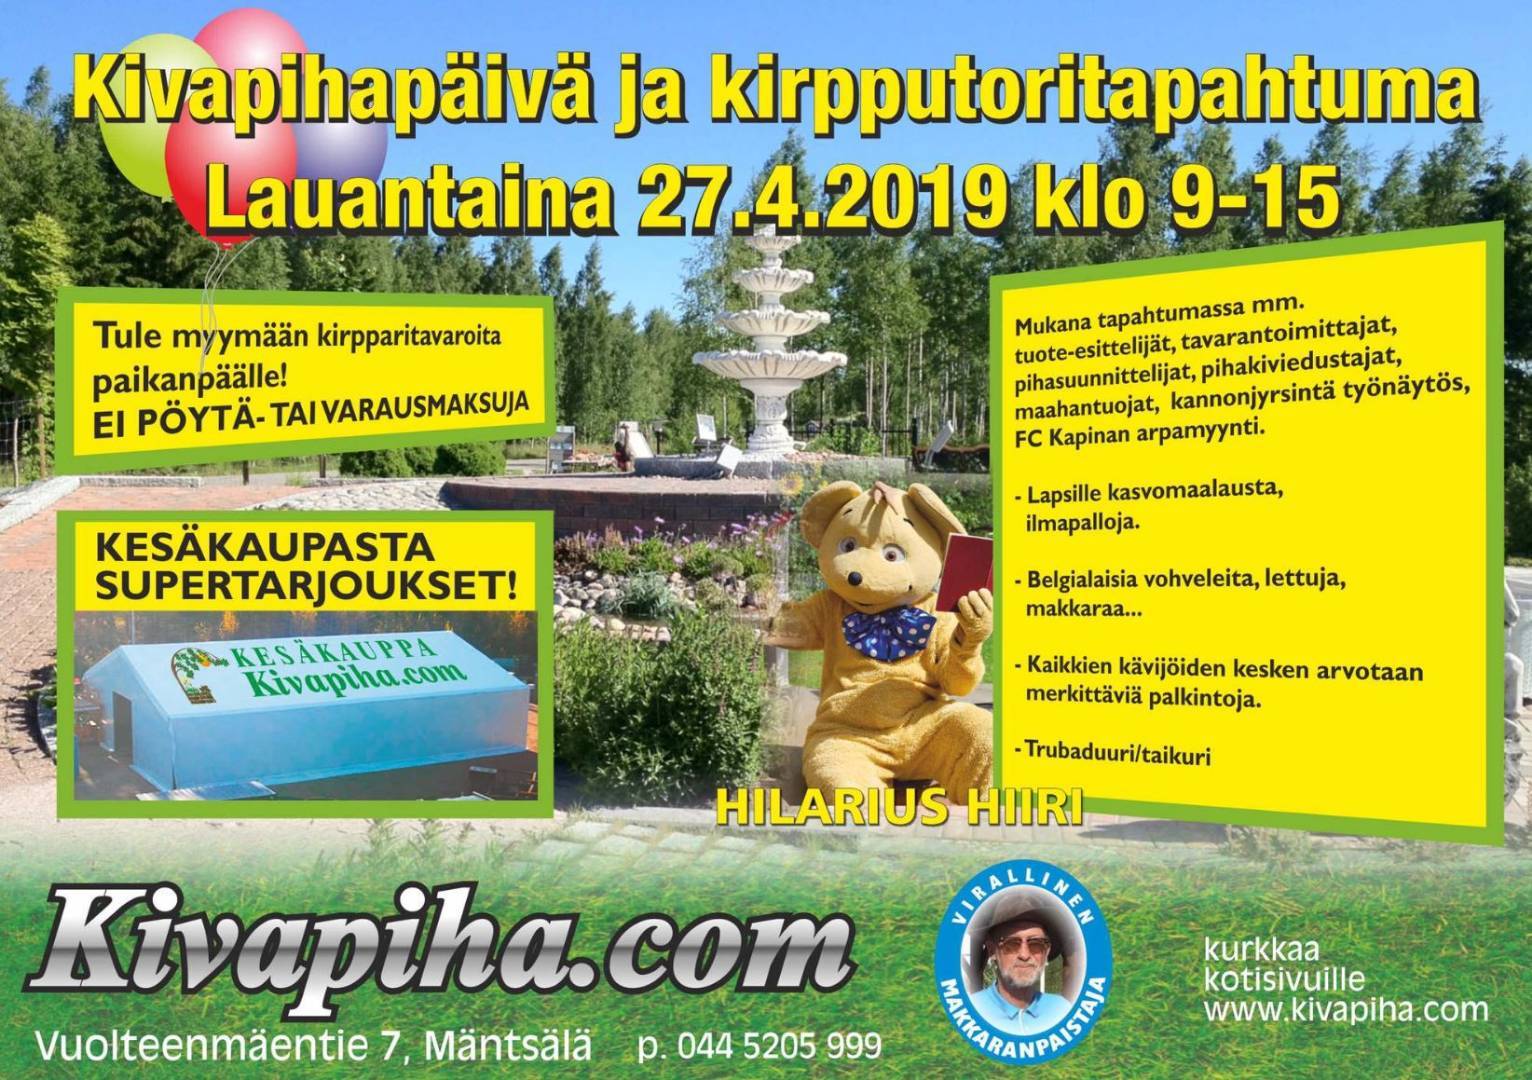 FC Kapina on mukana Kivapihan tapahtumassa 27.4.